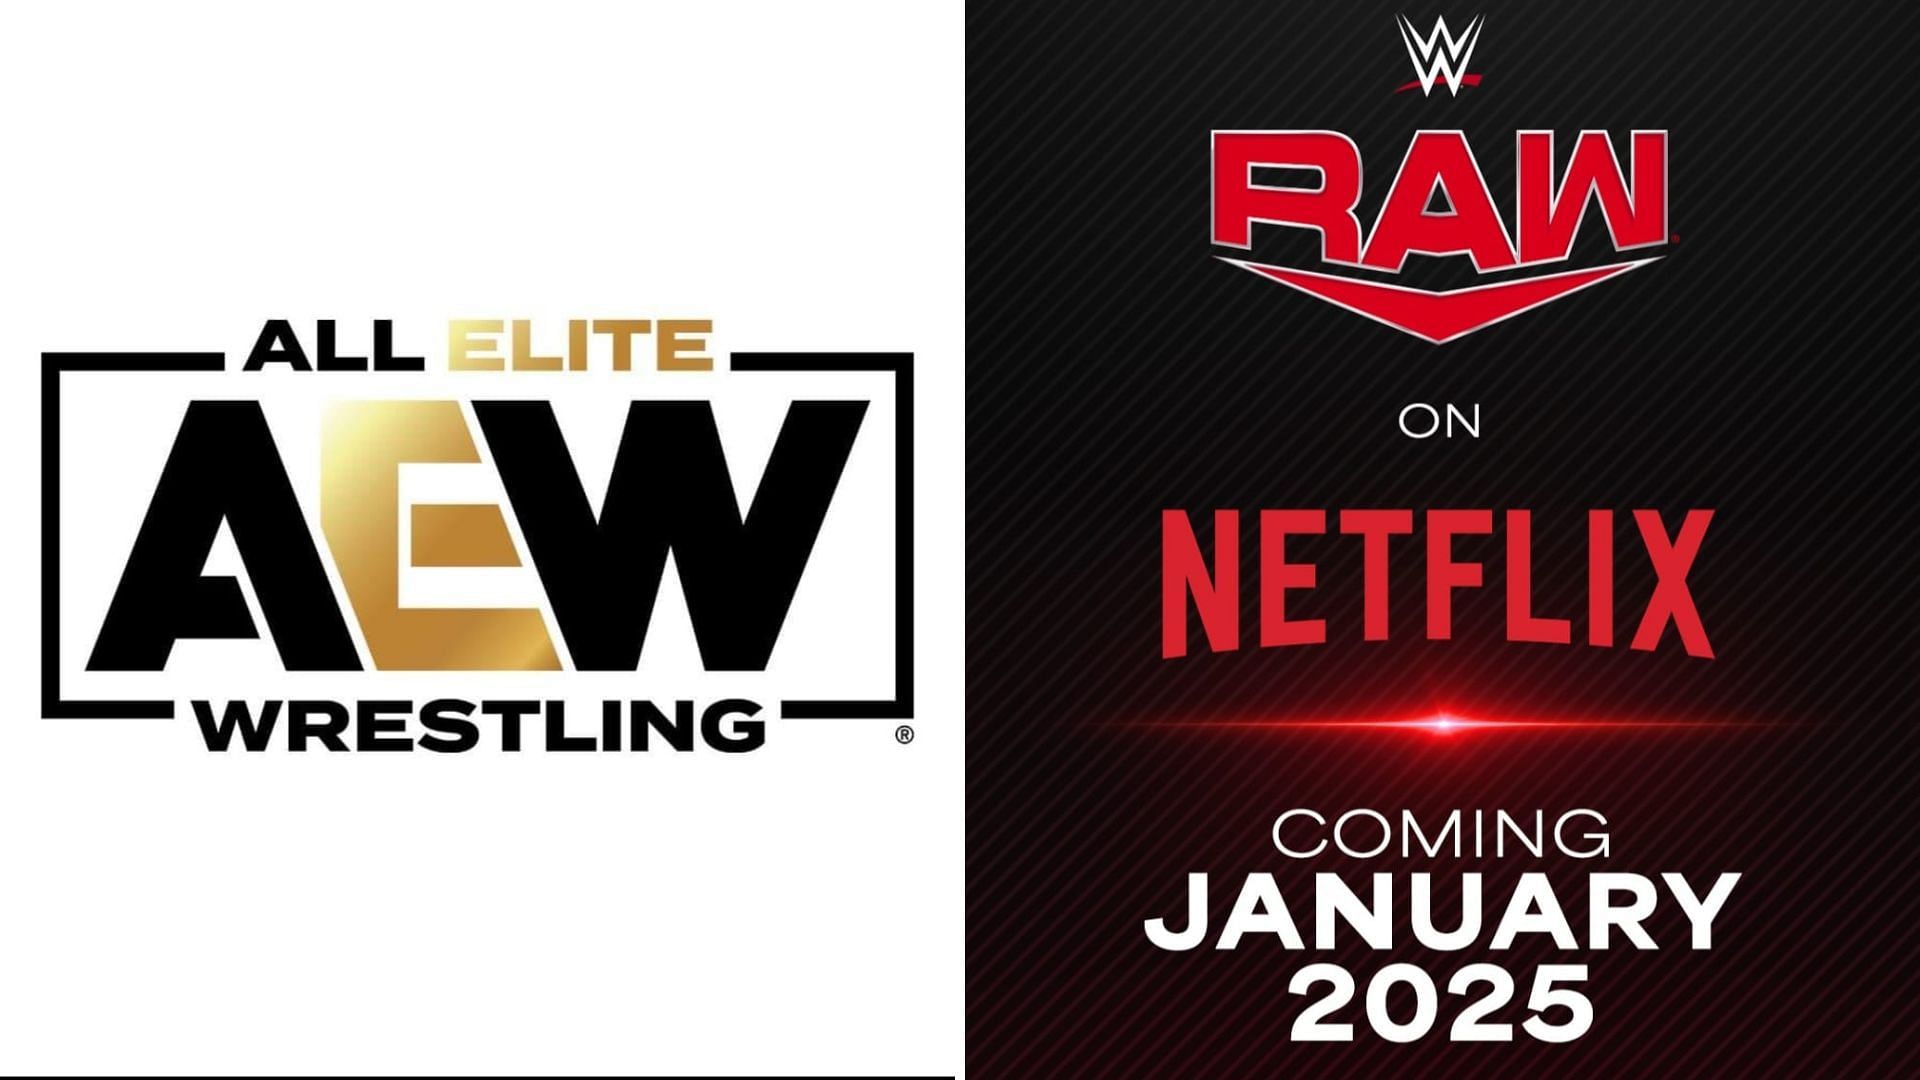 WWE and Netflix recently struck a blockbuster deal